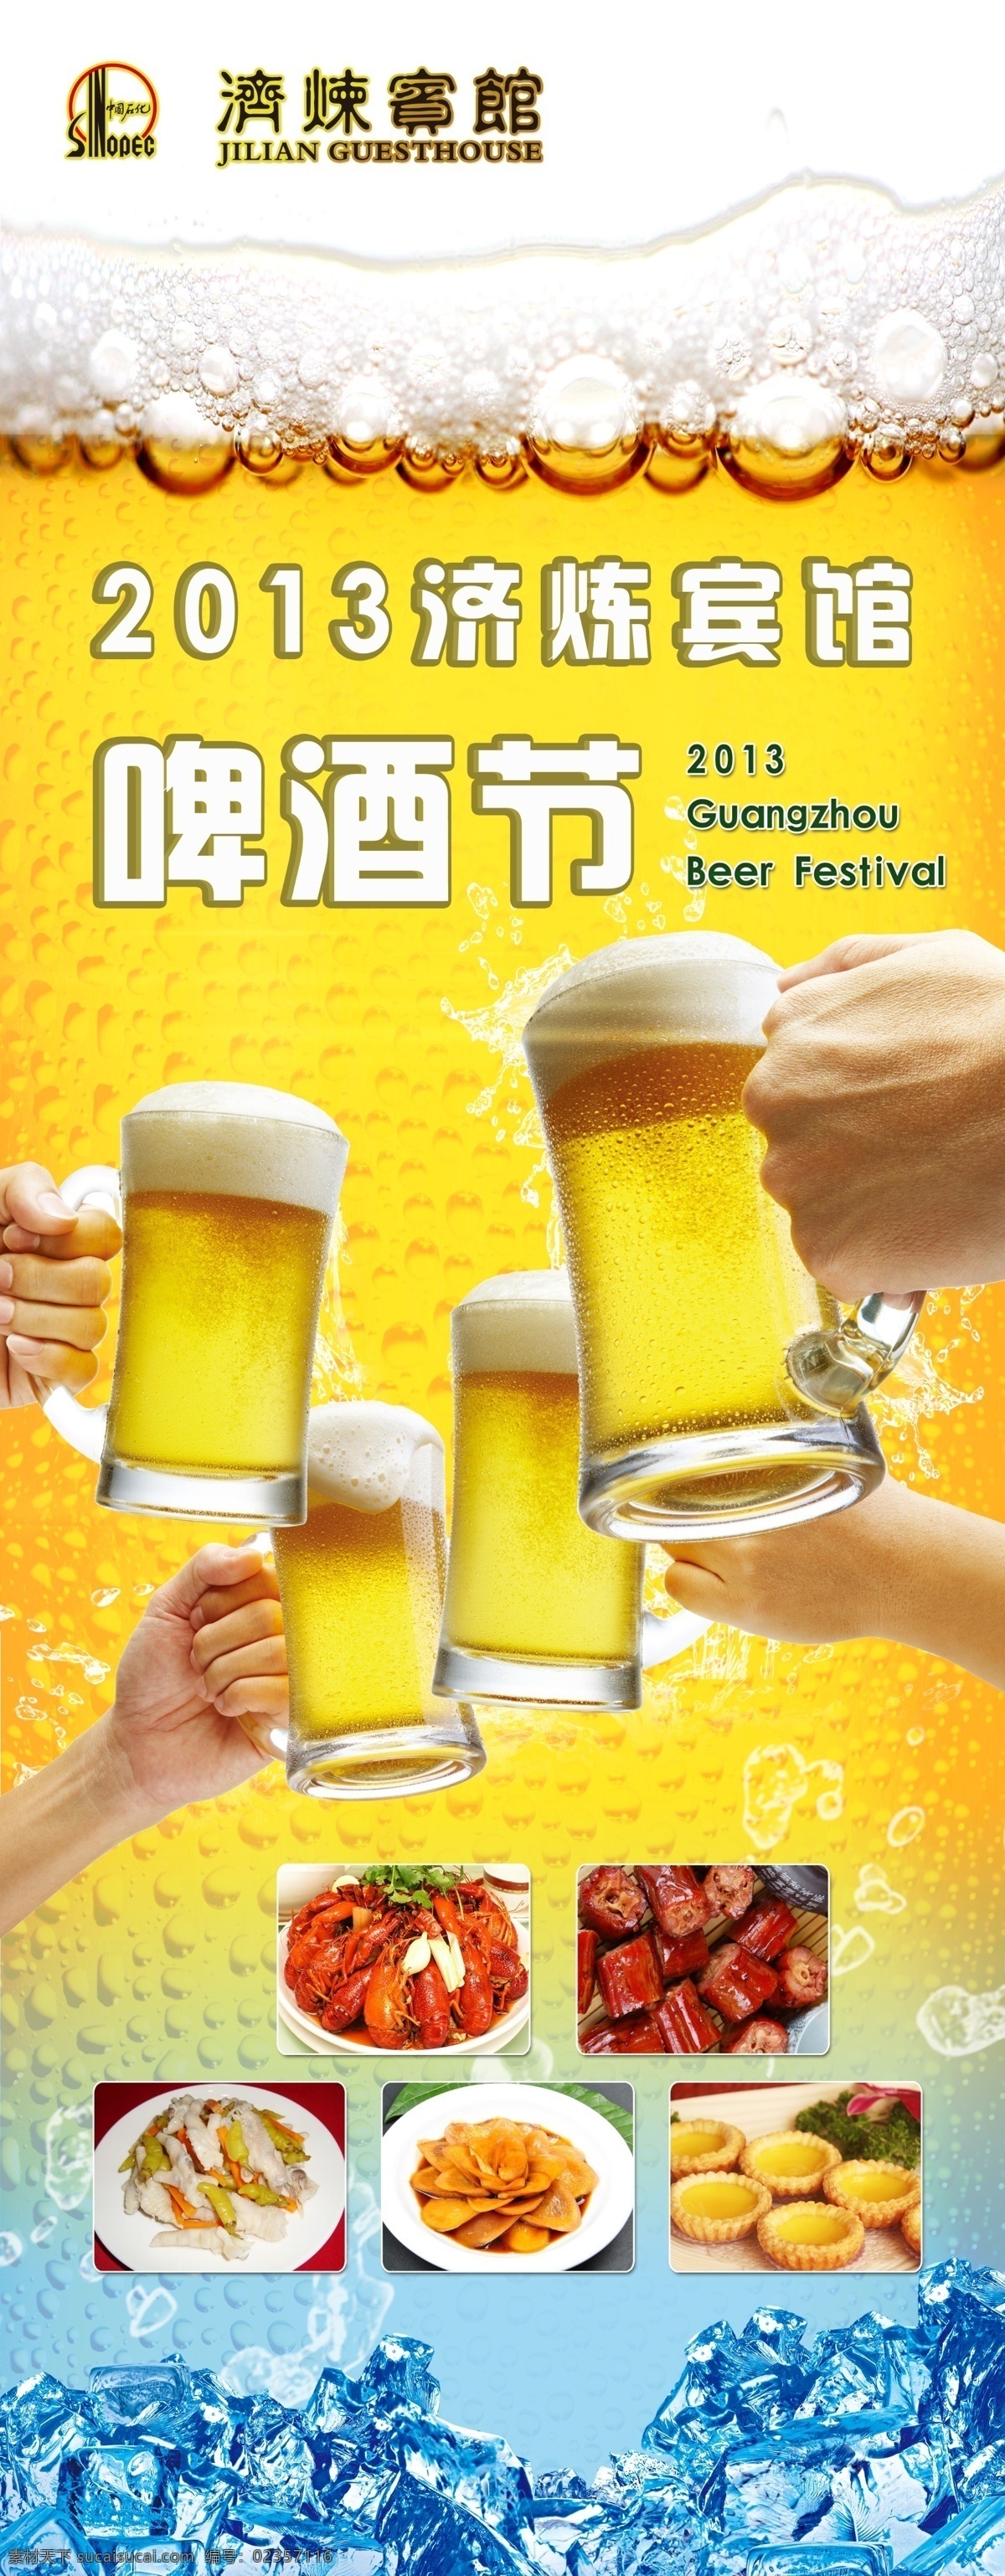 啤酒节海报 模版下载 啤酒 干杯 海报 展架 易拉宝 啤酒节 举杯 爽 聚会 广告设计模板 源文件